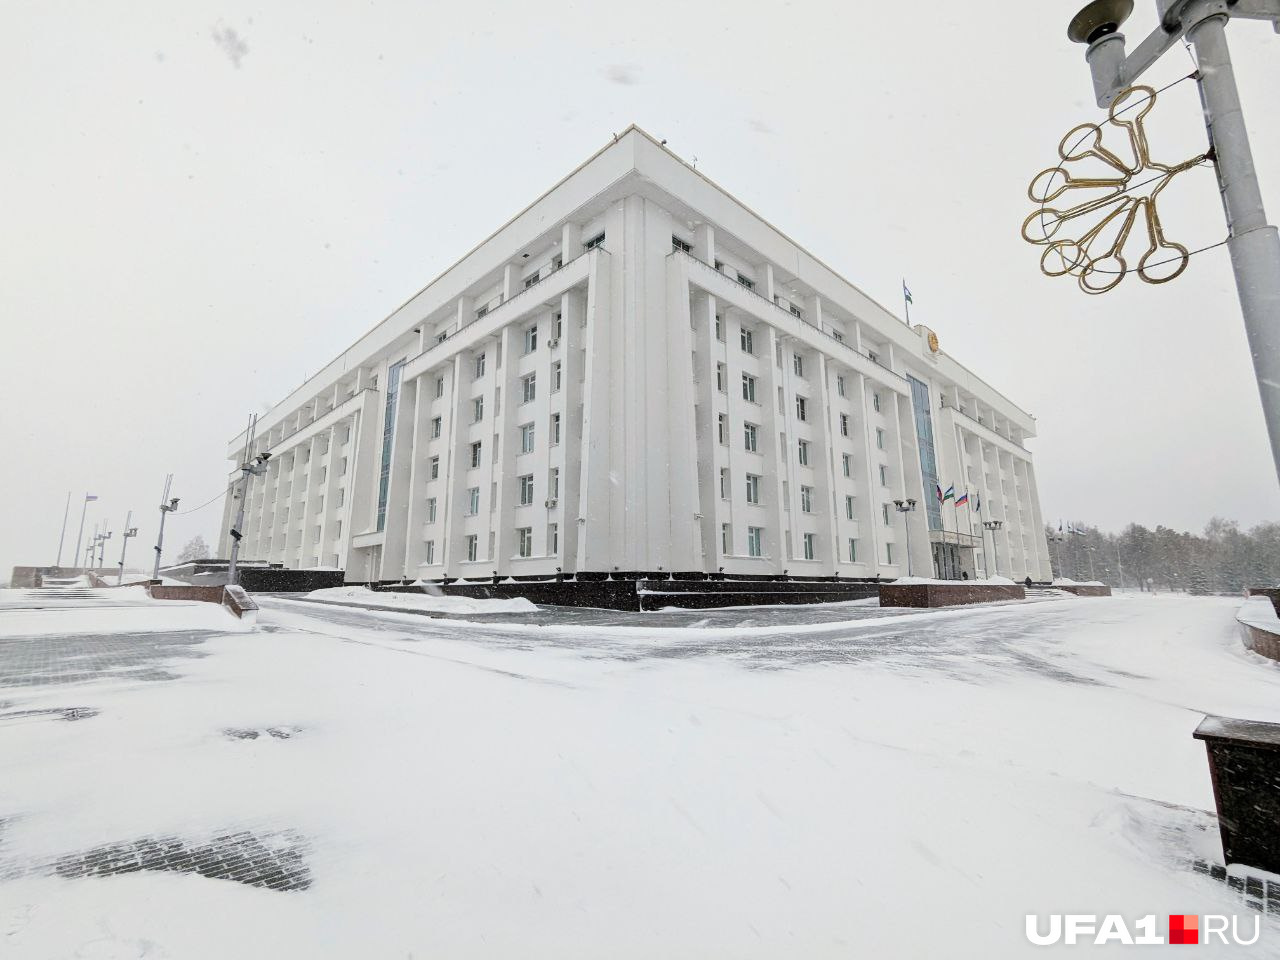 Рядом со зданием правительства снег почищен до брусчатки